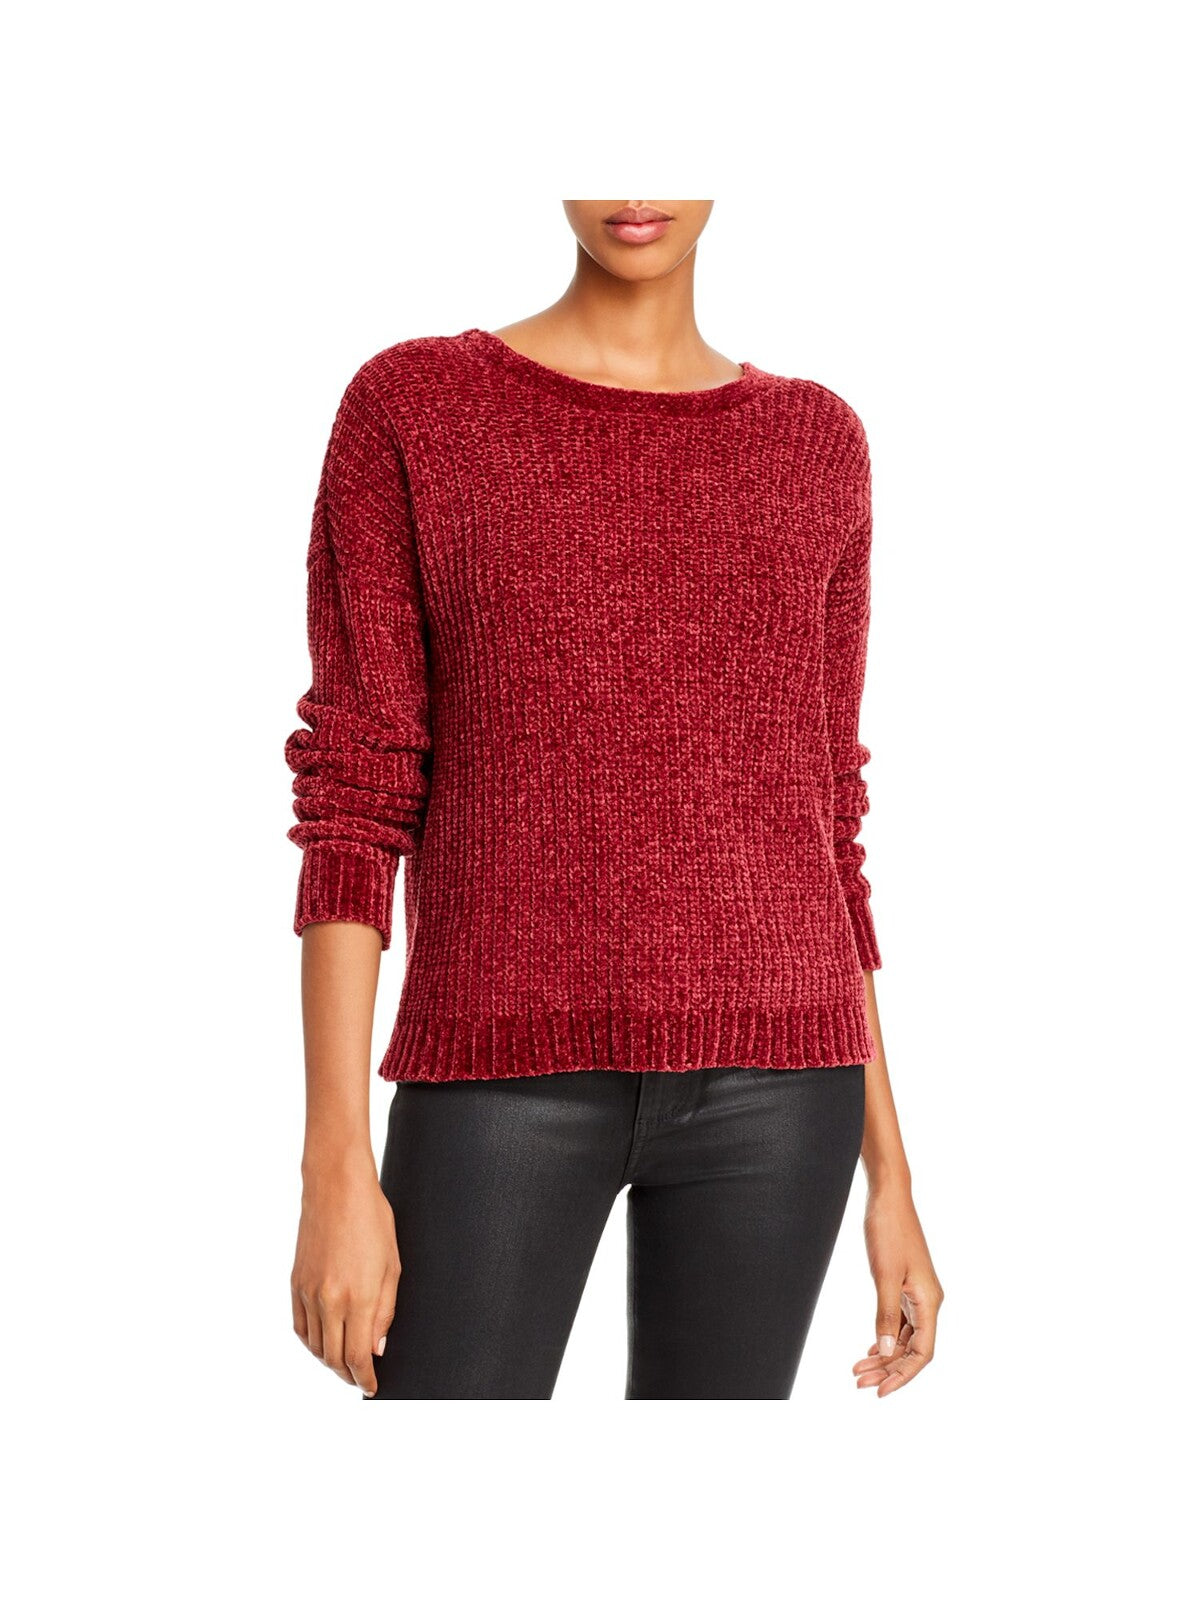 AQUA Womens Maroon Patterned Raglan Jewel Neck Sweater Size: XS